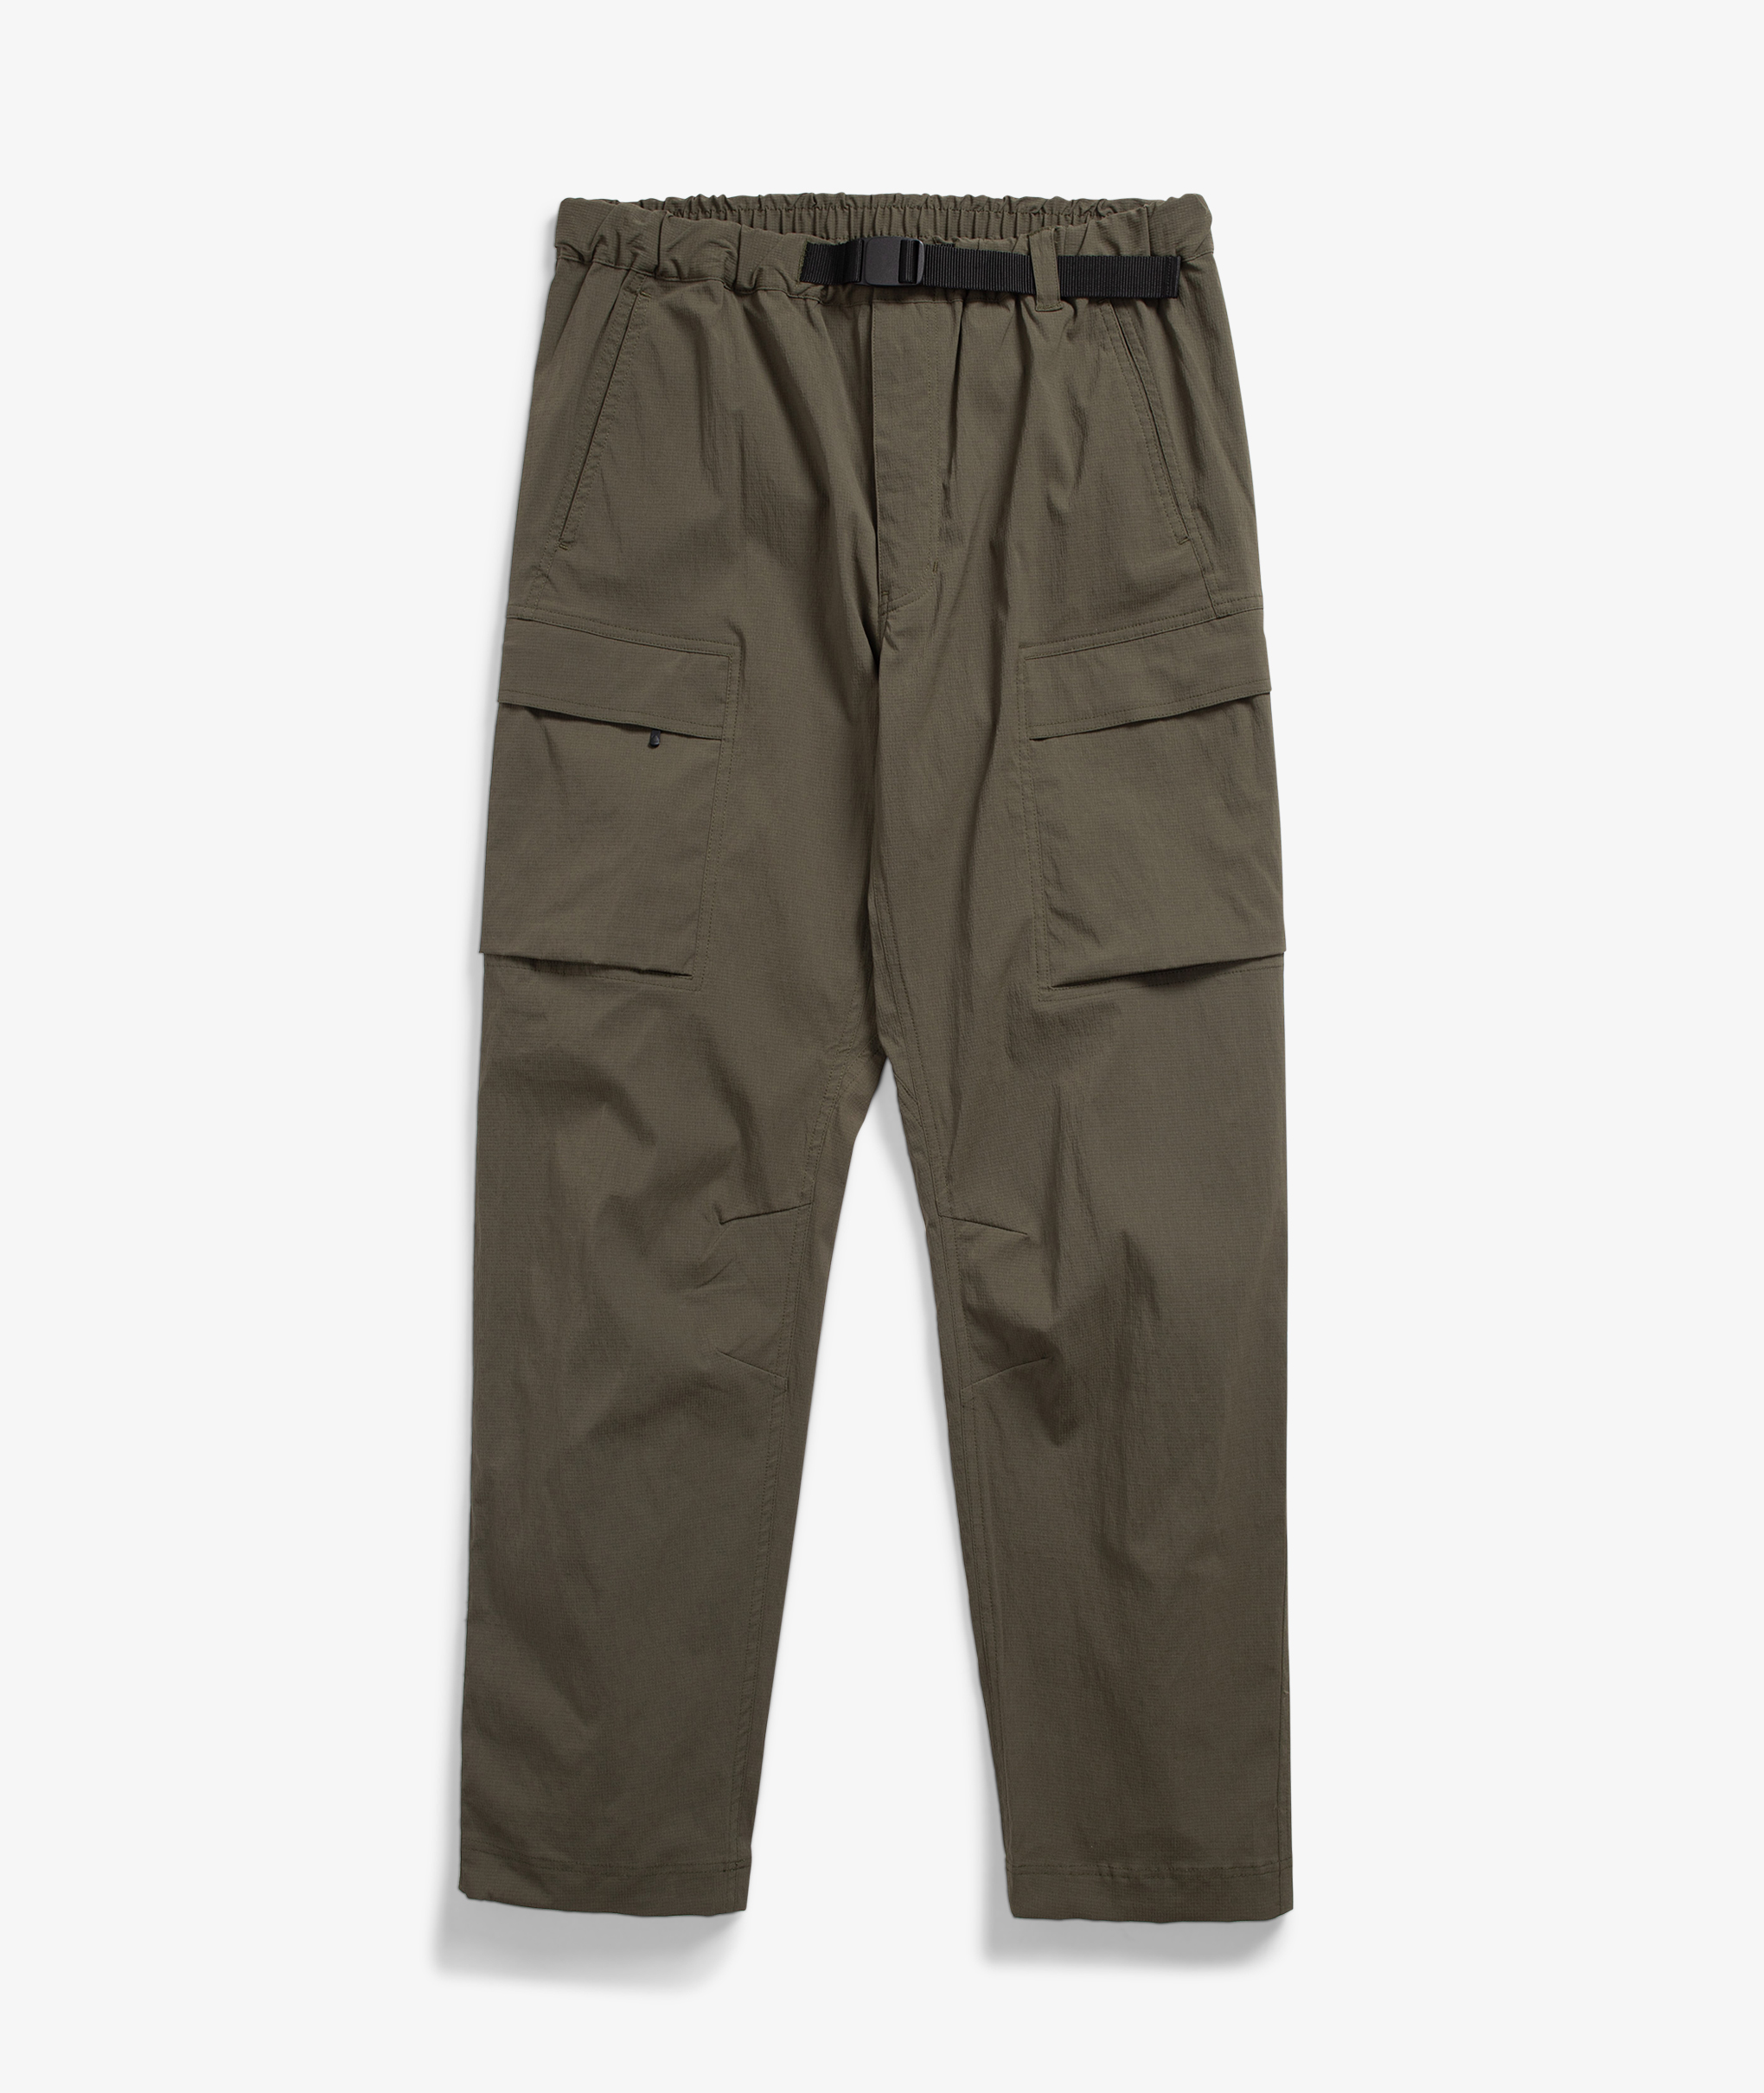 Four Way Stretch Cargo Pant| Brooklyn Cloth